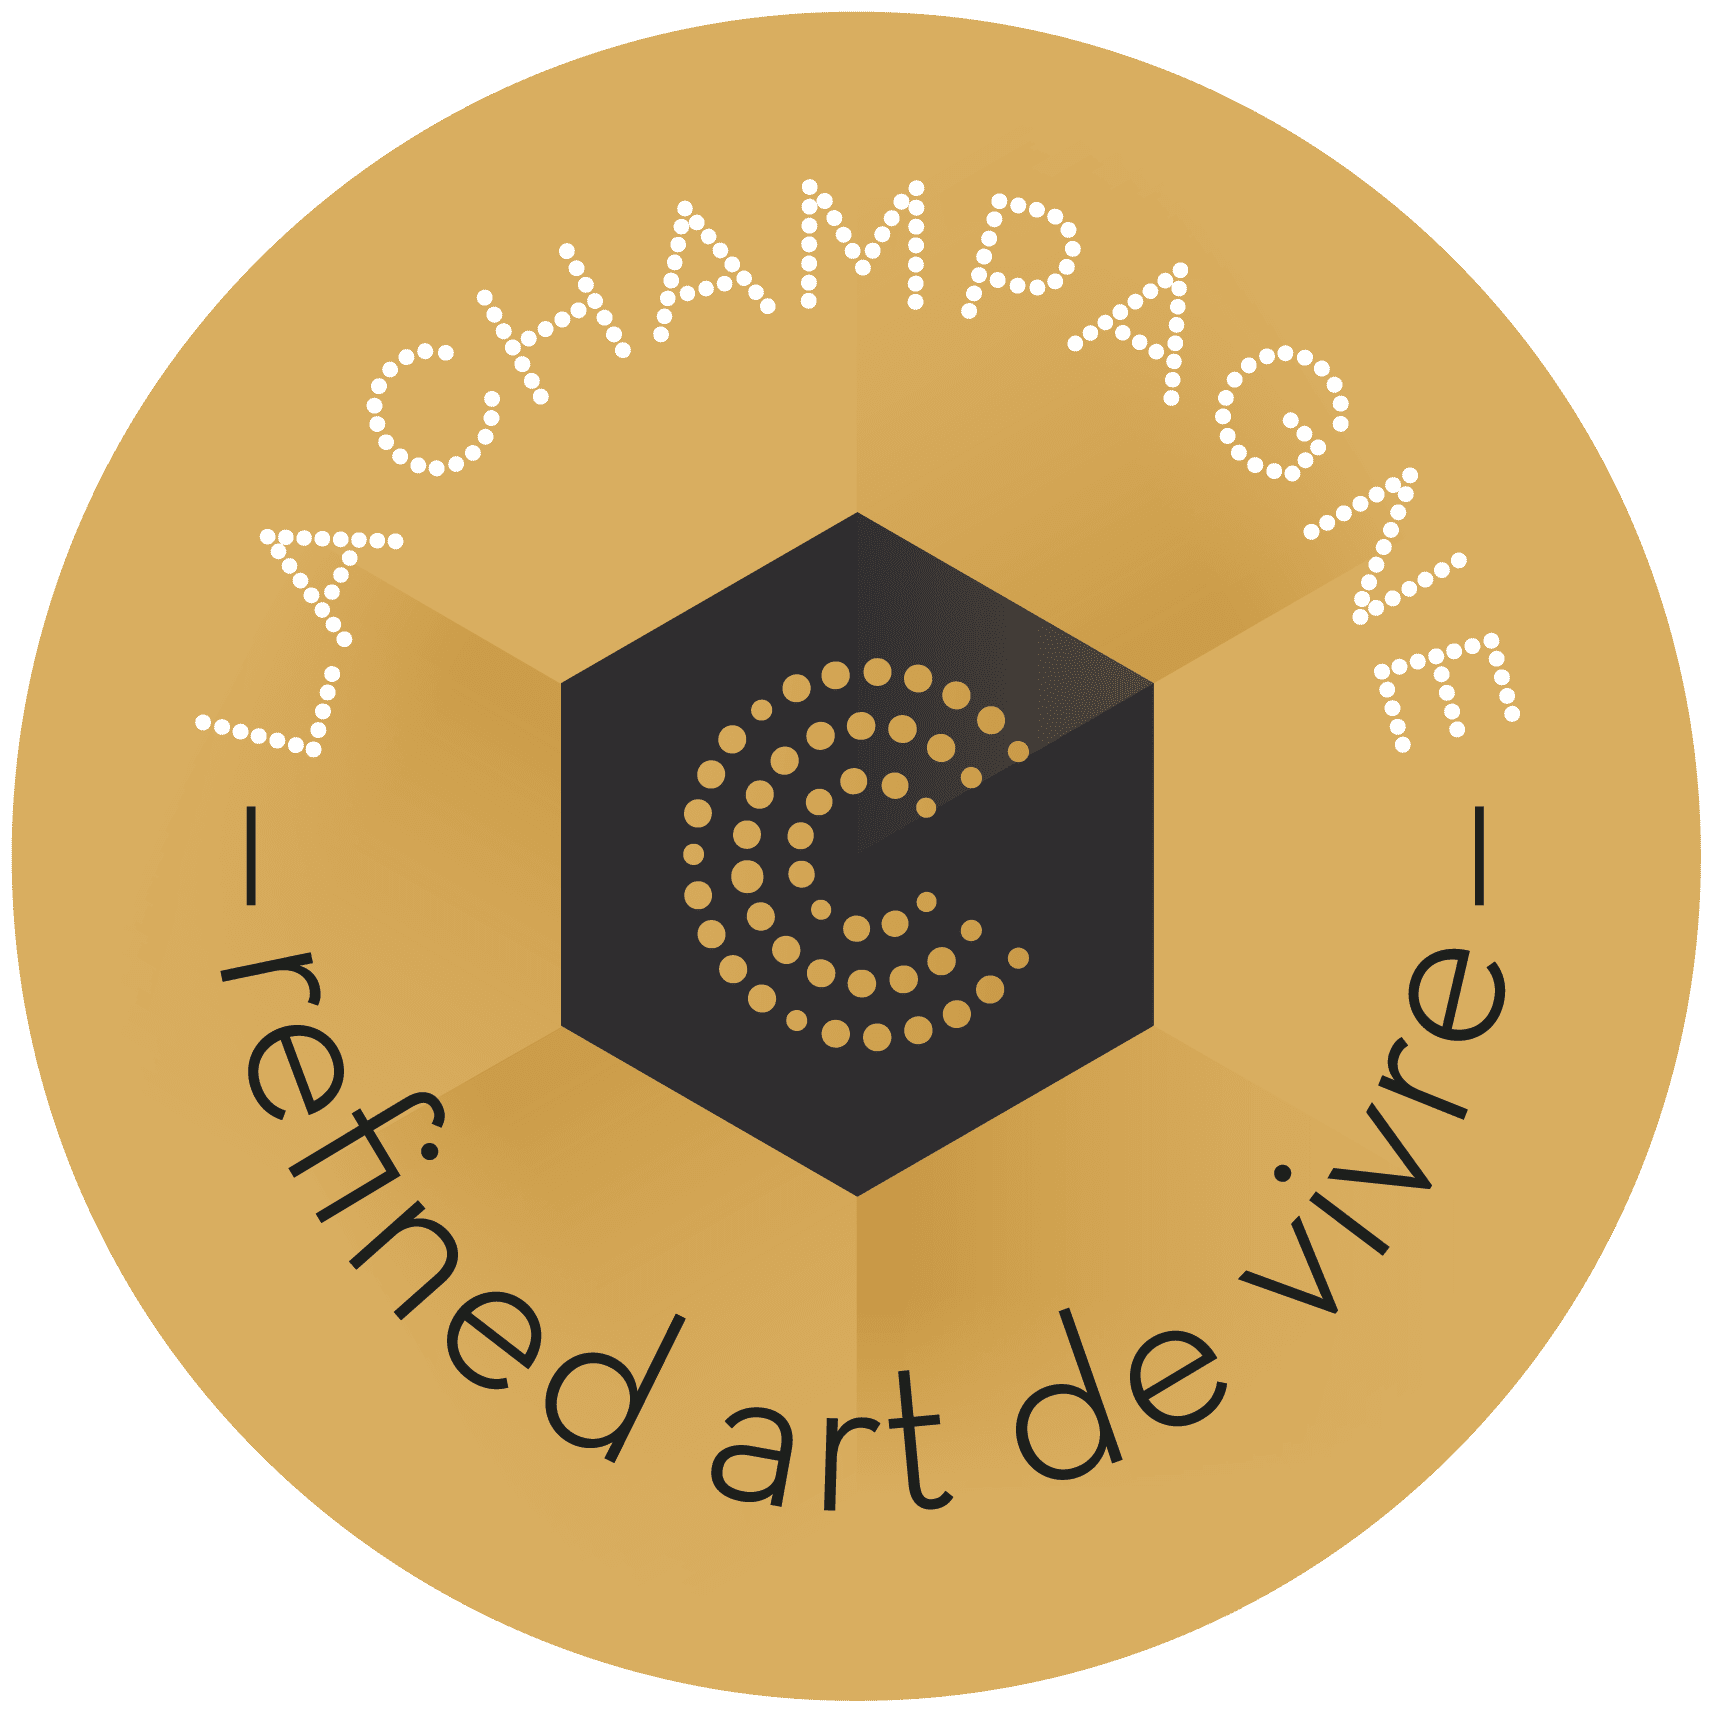 La Champagne, Refined Art de Vivre